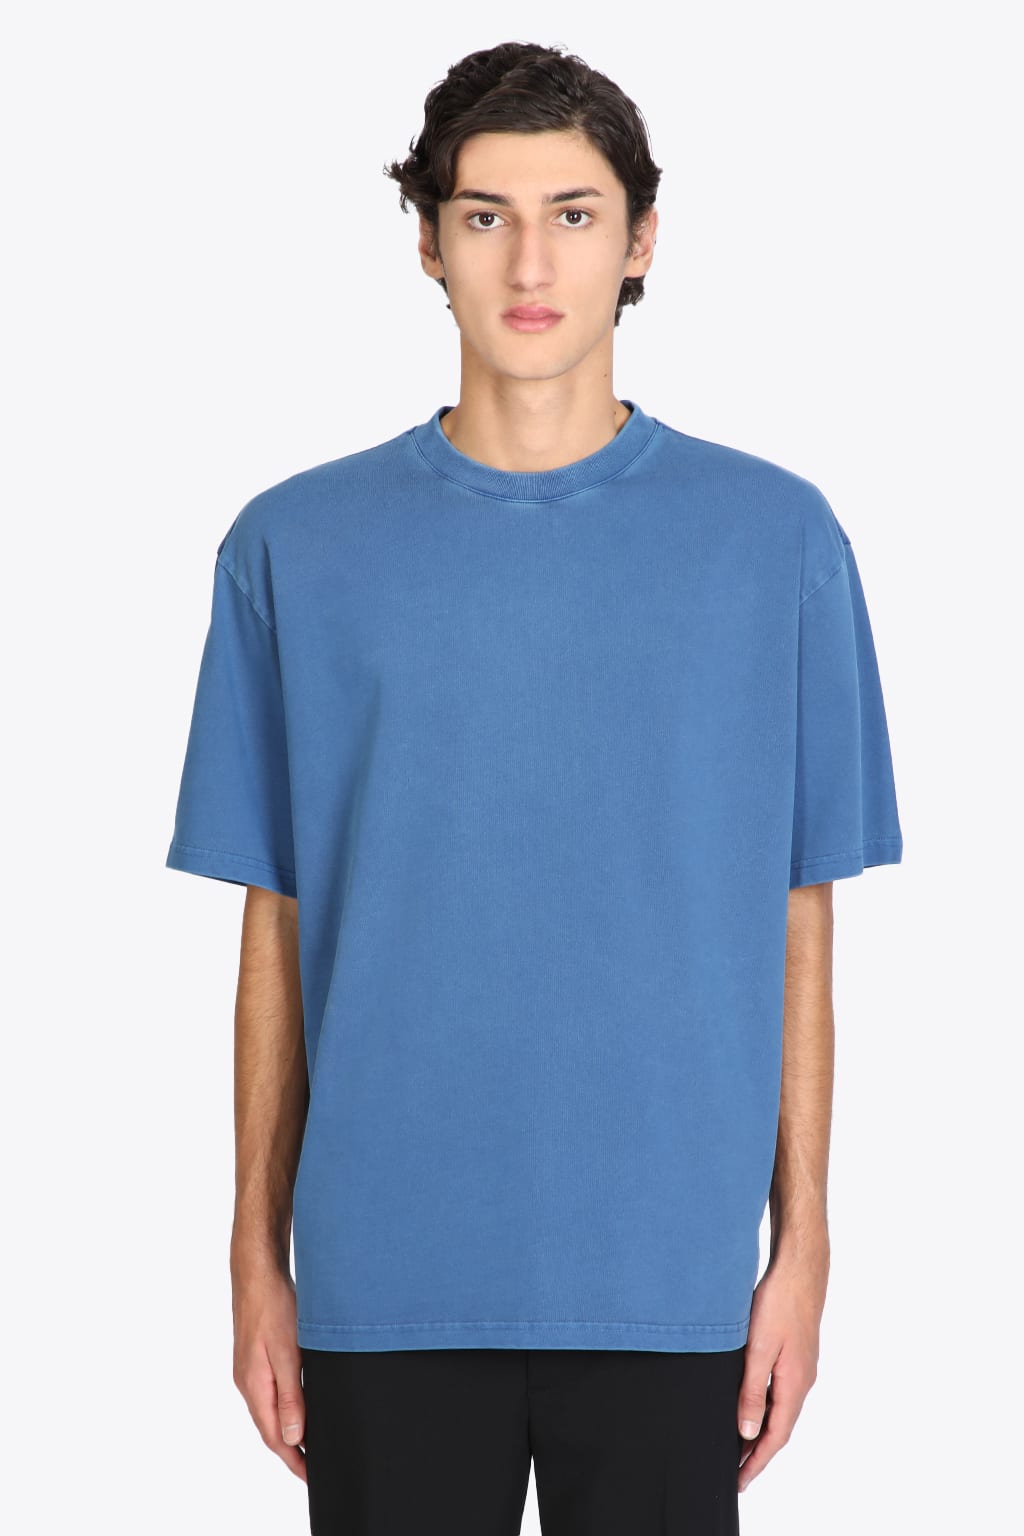 Axel Arigato Origin T-shirt Cobalt blue dyed cotton t-shirt with back logo - Origin t-shirt